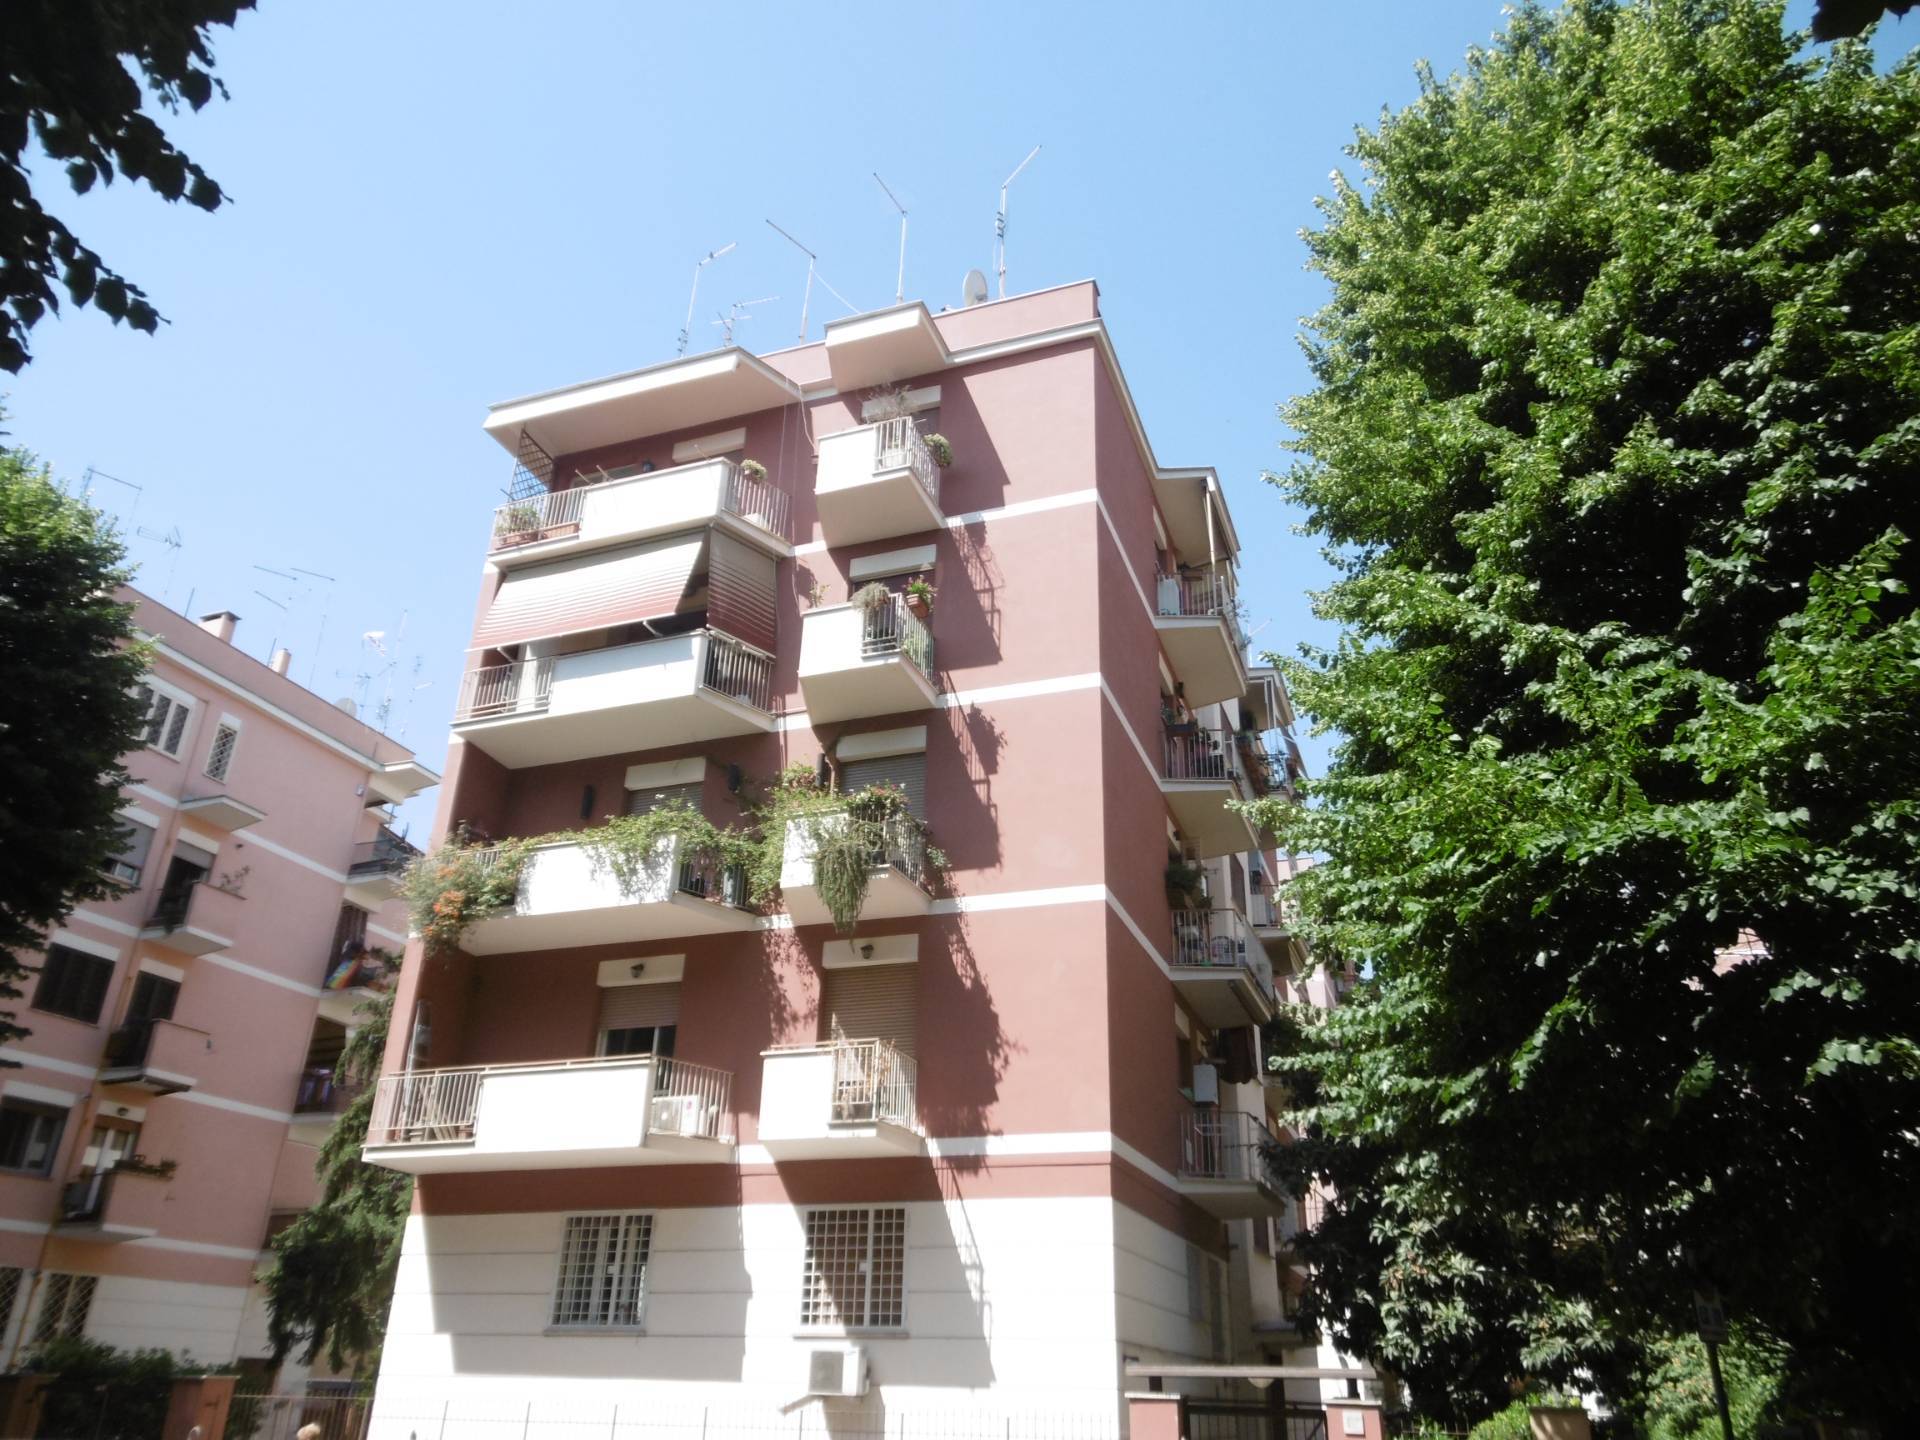 Appartamento in vendita a Roma, 4 locali, zona Zona: 23 . Portuense - Magliana, prezzo € 300.000 | CambioCasa.it